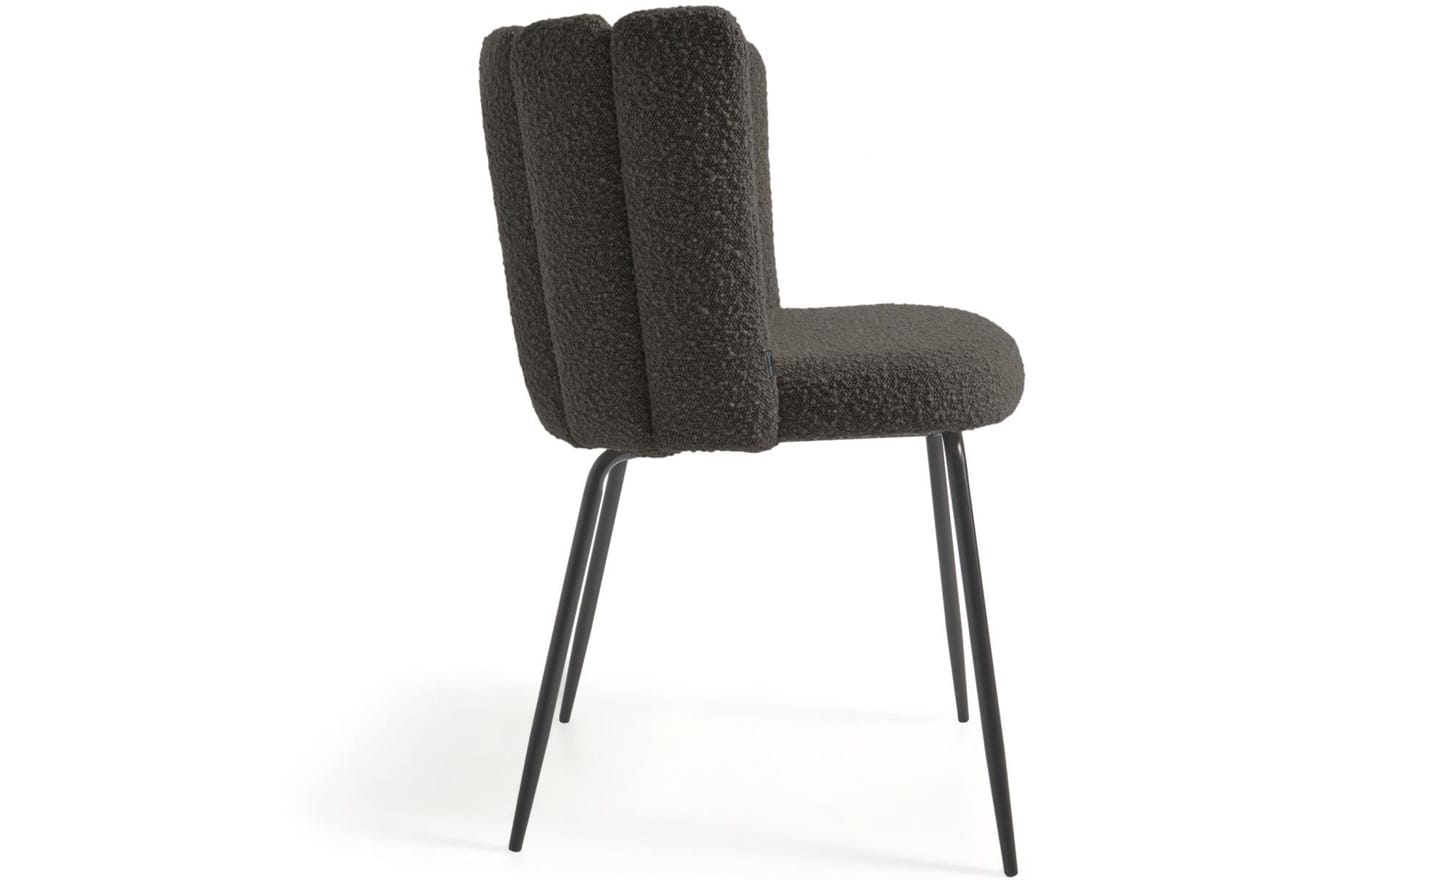 Cadeira Aniela Preto, estofada com tecido de efeito borrego preto. Design envolvente para espaços de refeição elegantes.